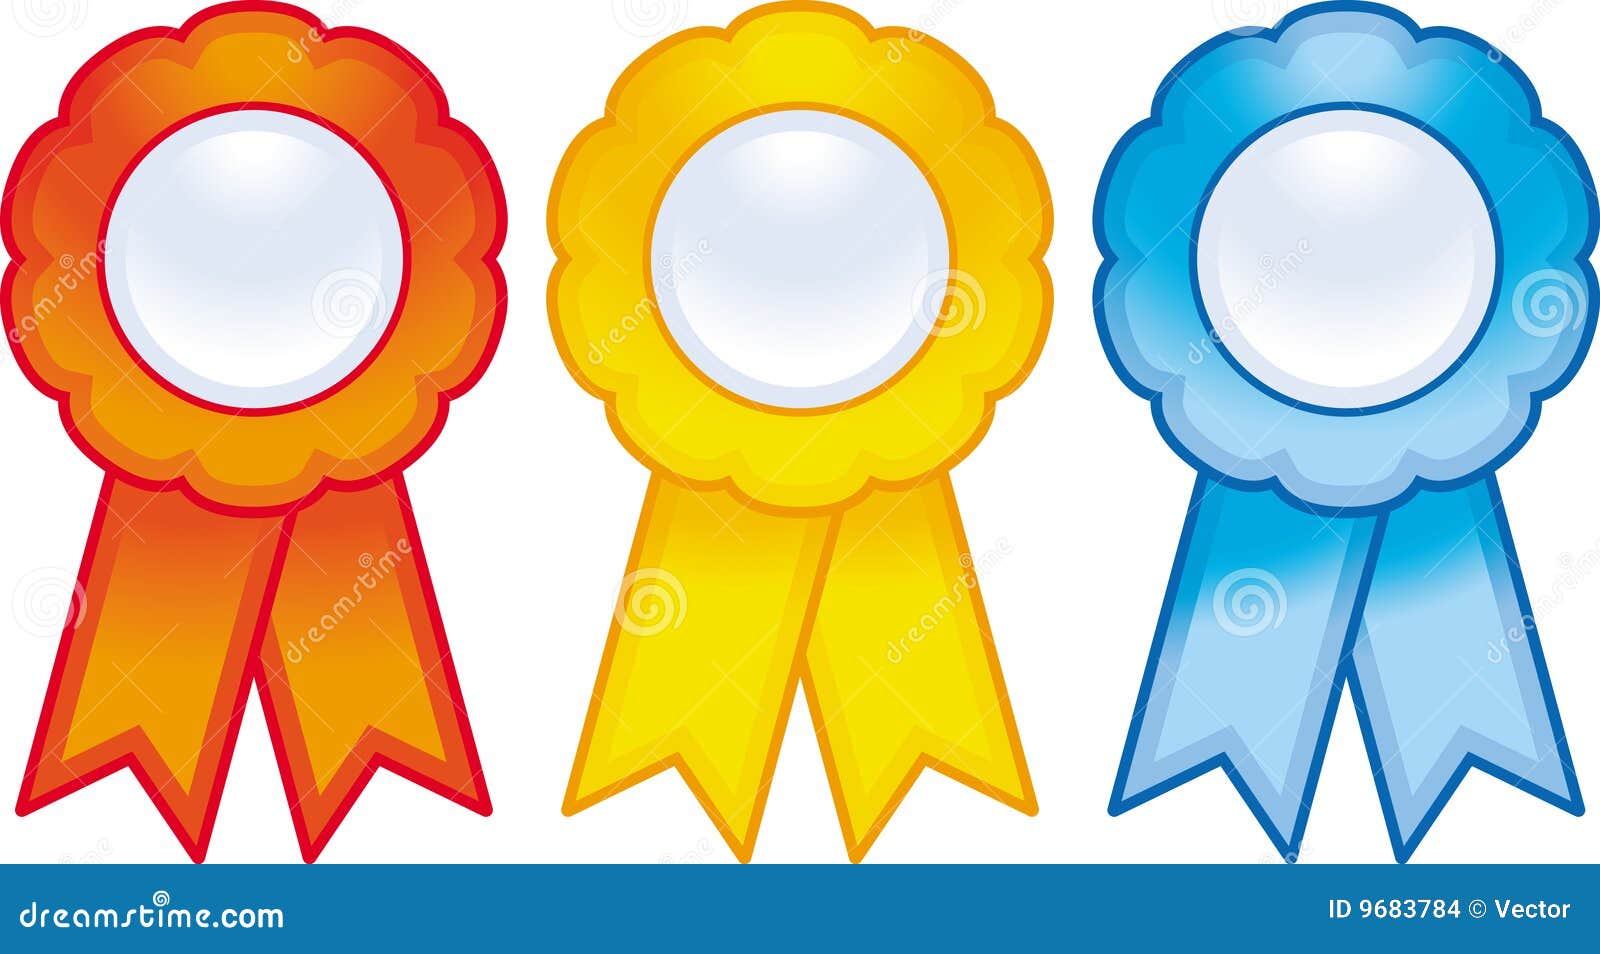 Award Ribbons (Vector) Stock Images - Image: 9683784